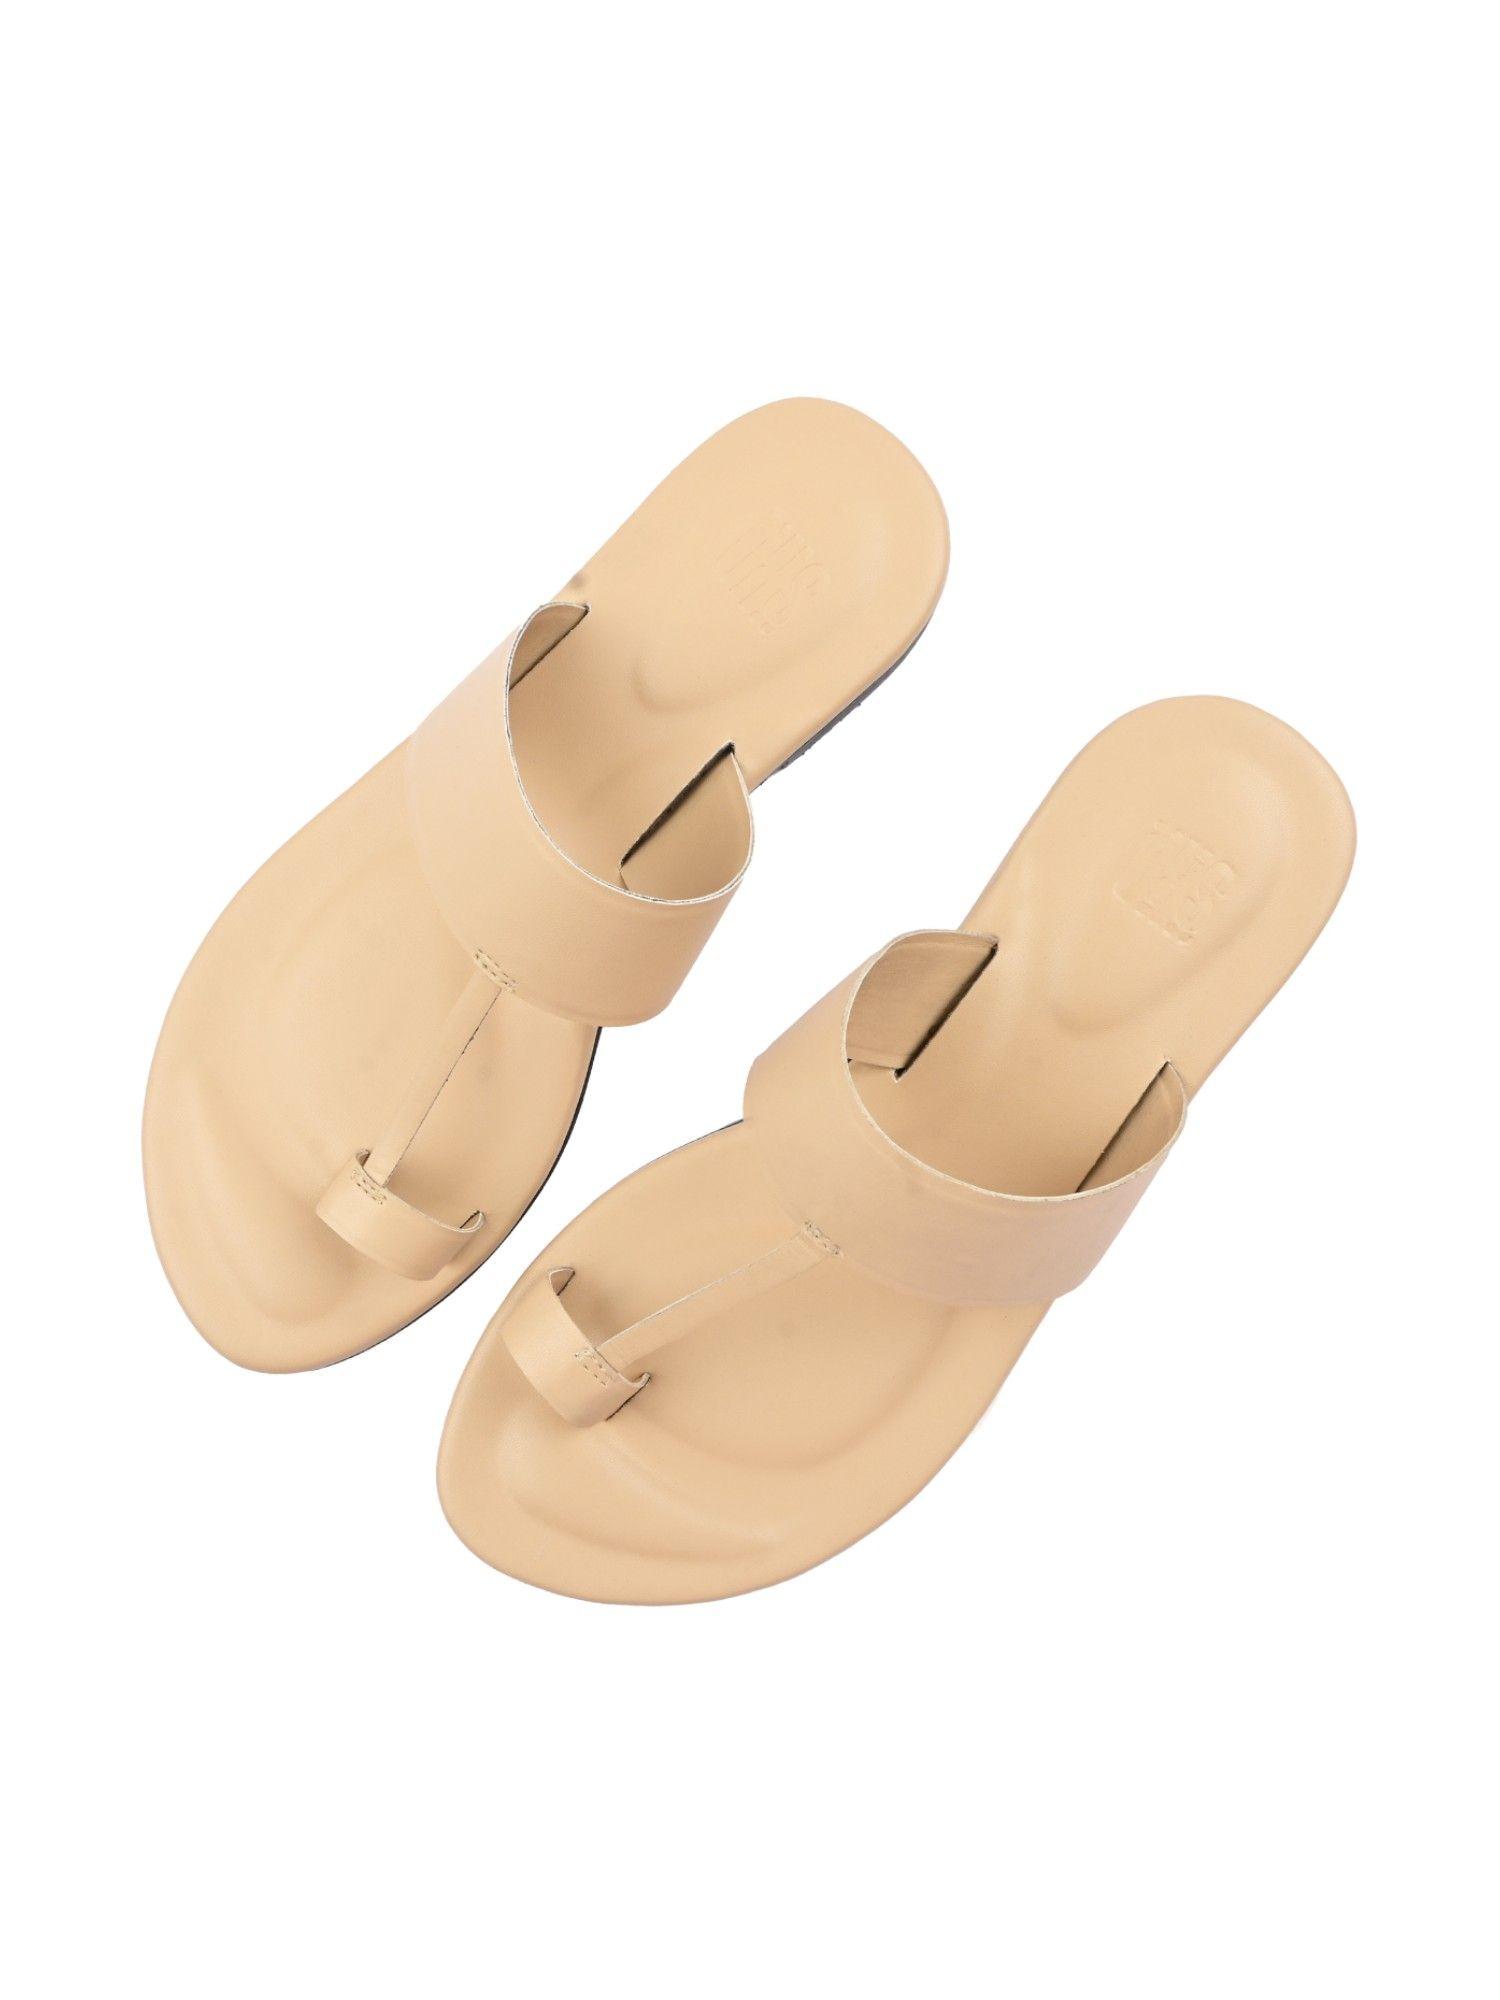 solid beige single toe sandal for women